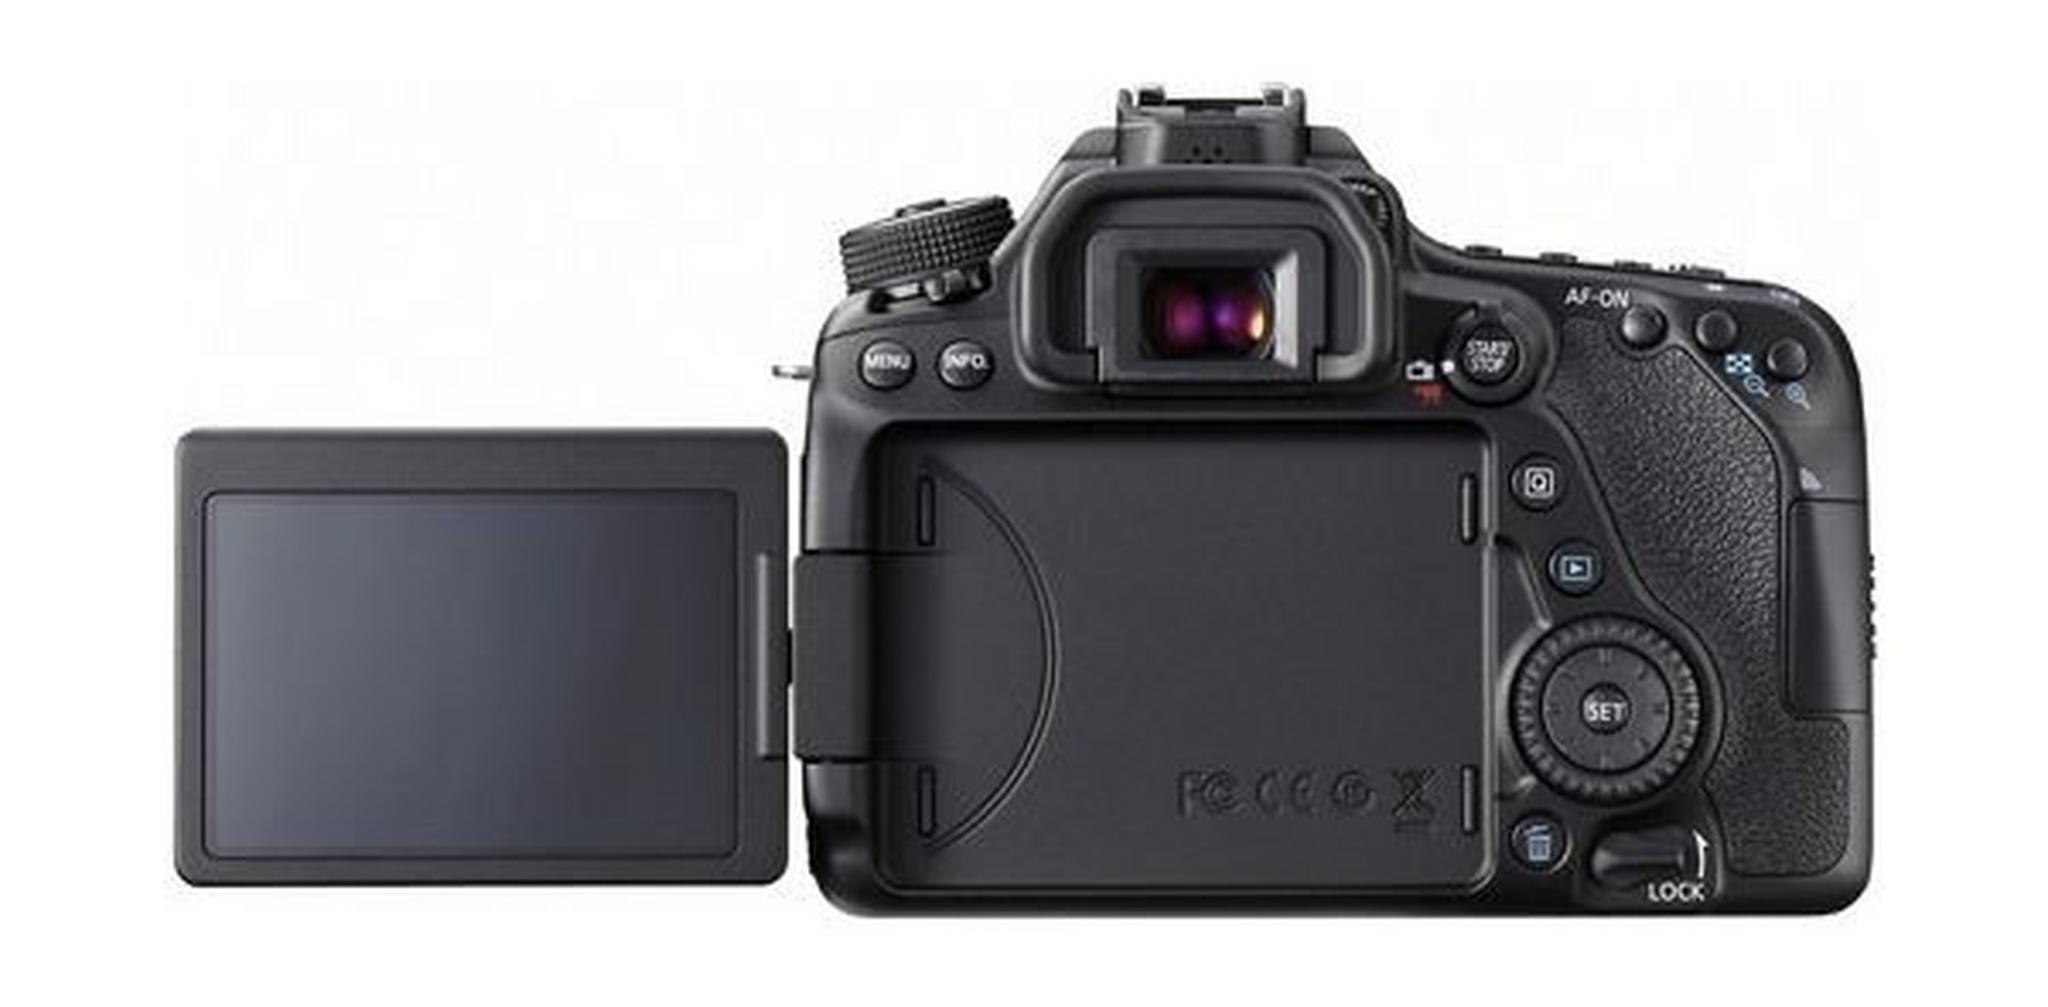 كاميرا كانون الرقمية إس إل آر بدقة ٢٤.٢ ميجا بكسل مع عدسة ١٨-١٣٥ ملم - واي فاي - أسود (EOS-80D)